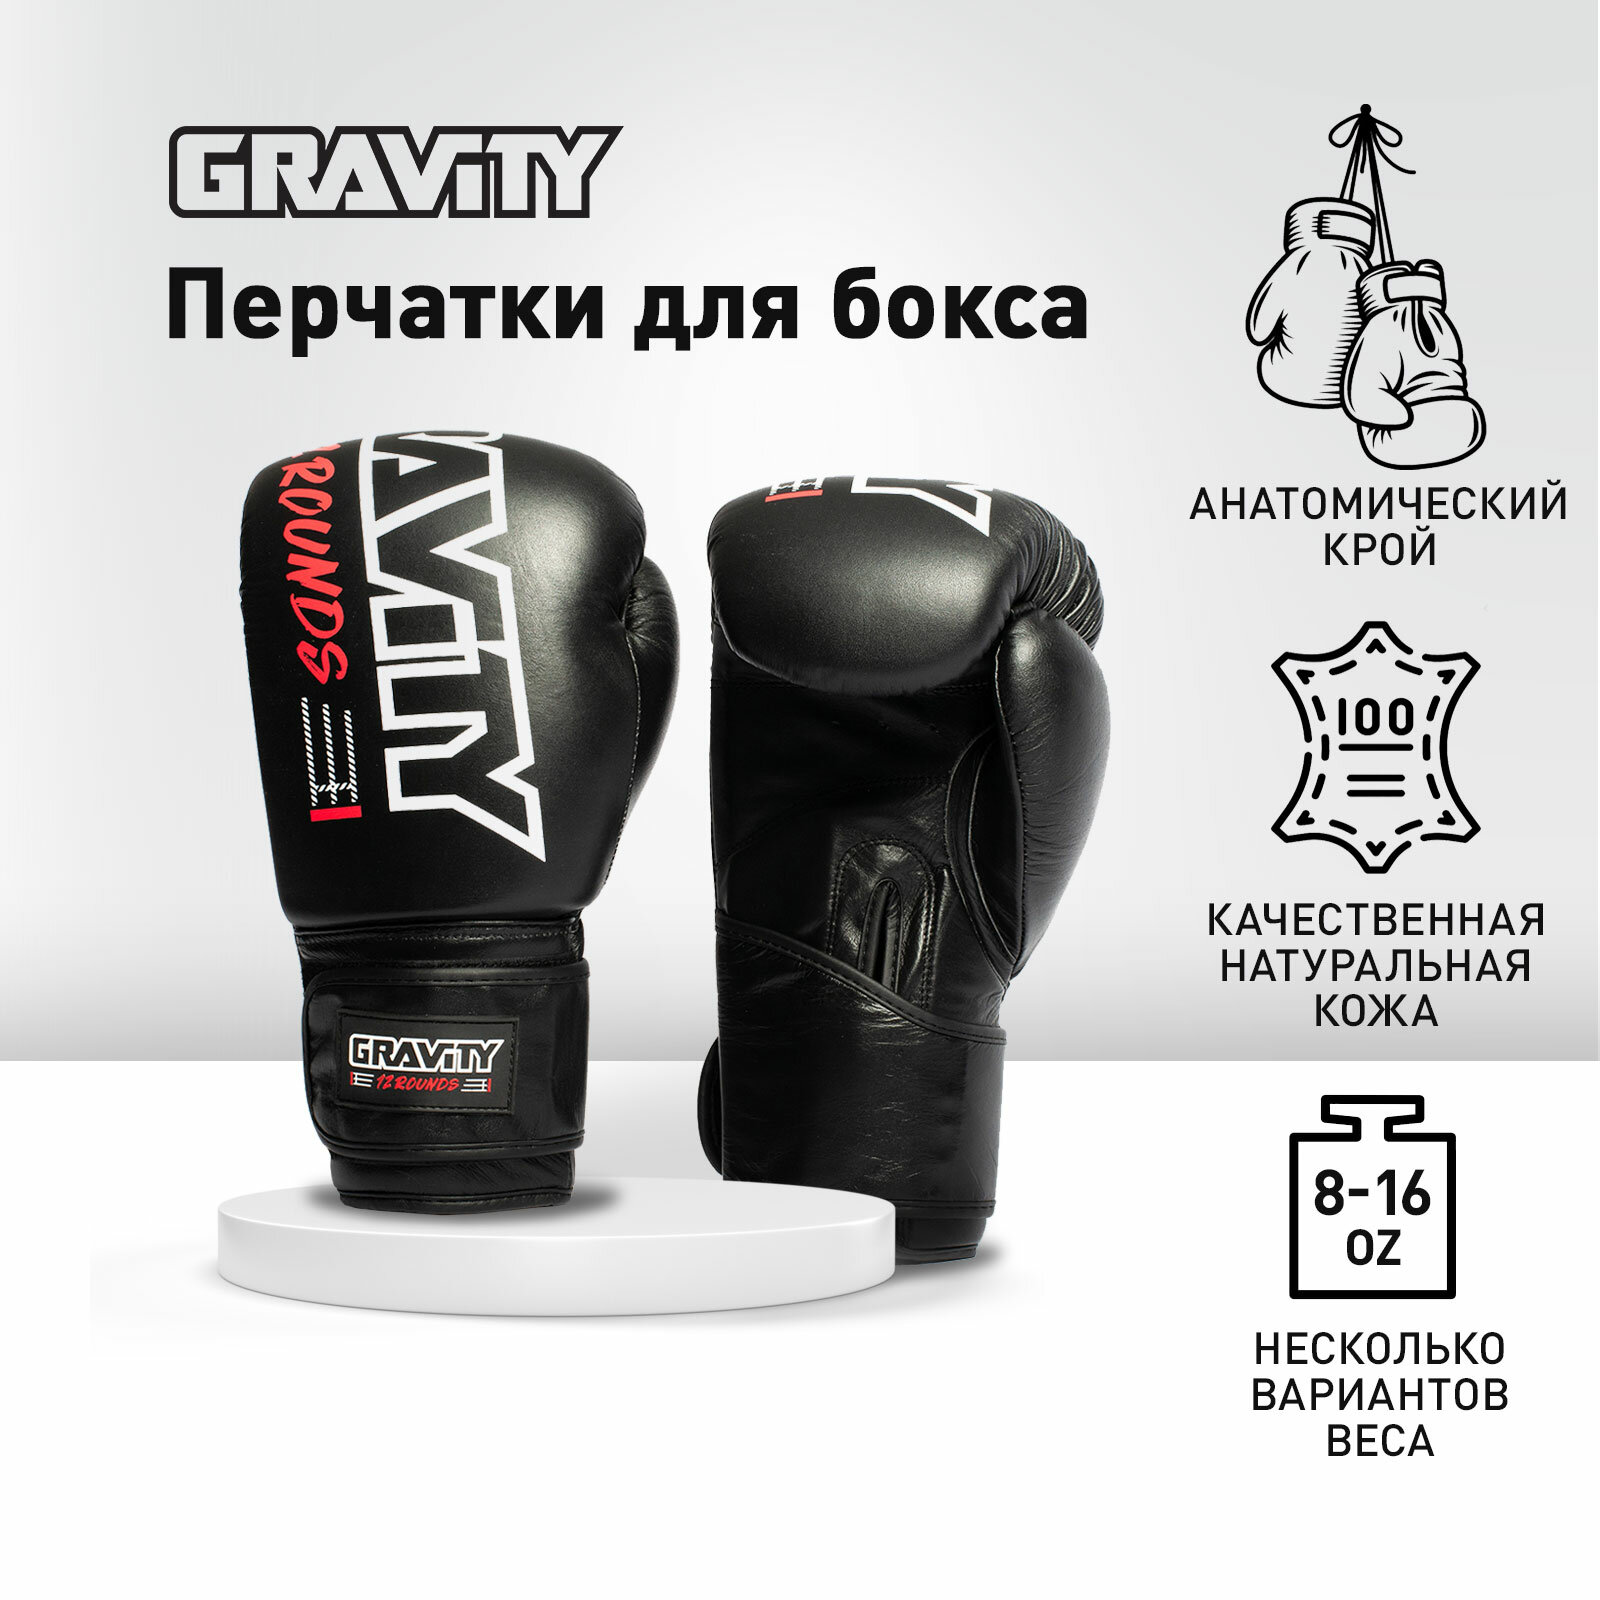 Перчатки для бокса Gravity, блестящая кожа, черные, 14 унций